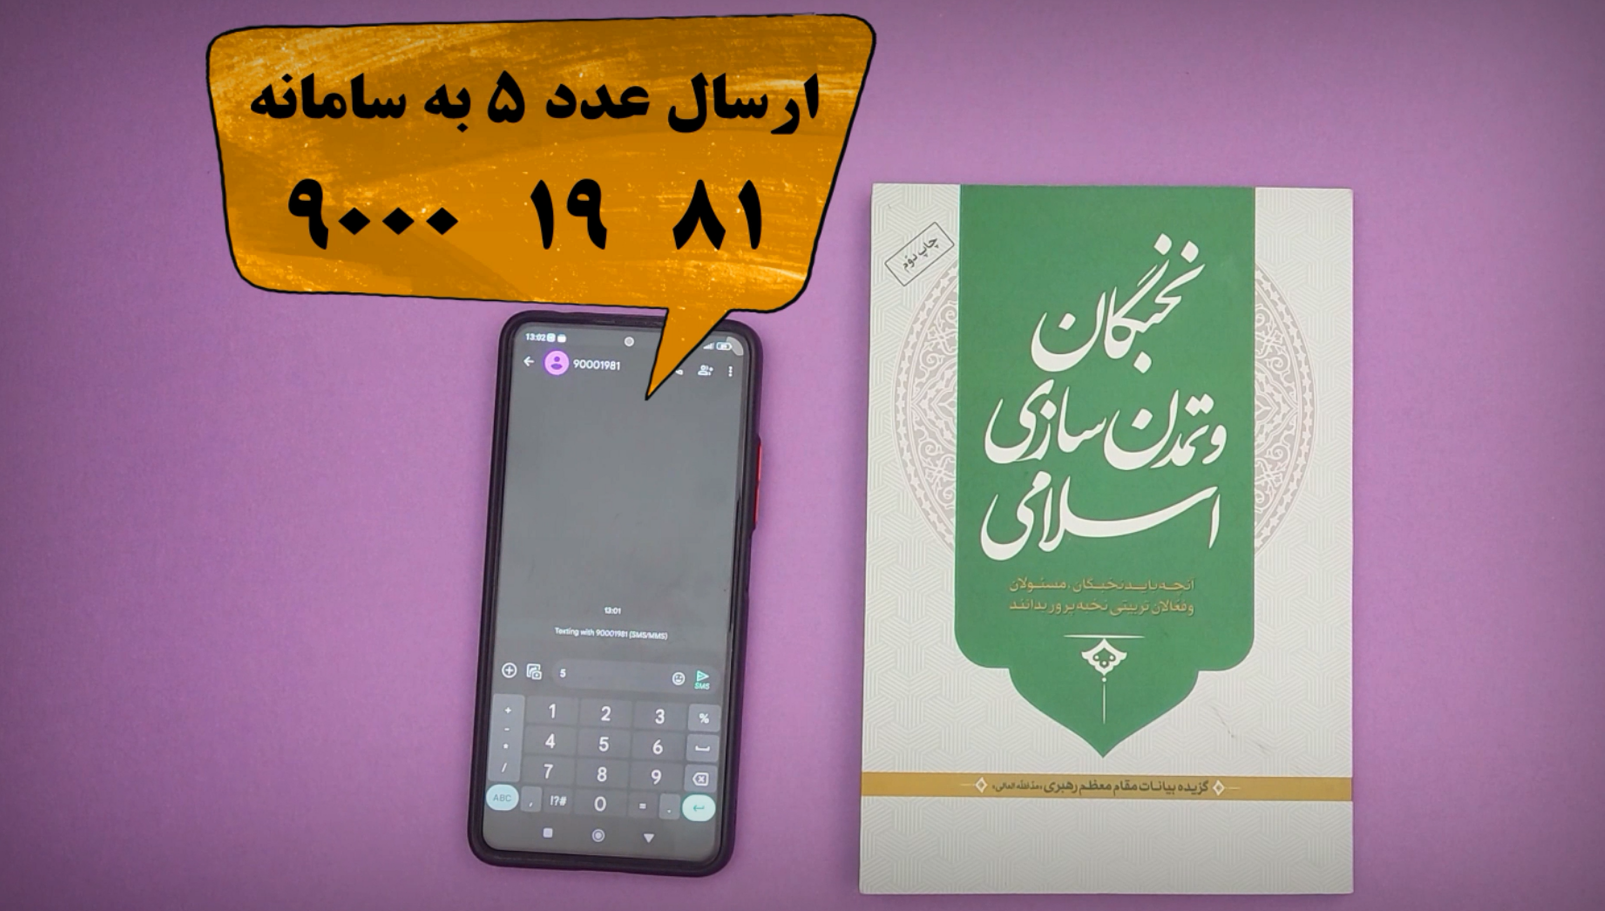 مسابقه بزرگ کتابخوانی نخبگان و تمدن سازی اسلامی